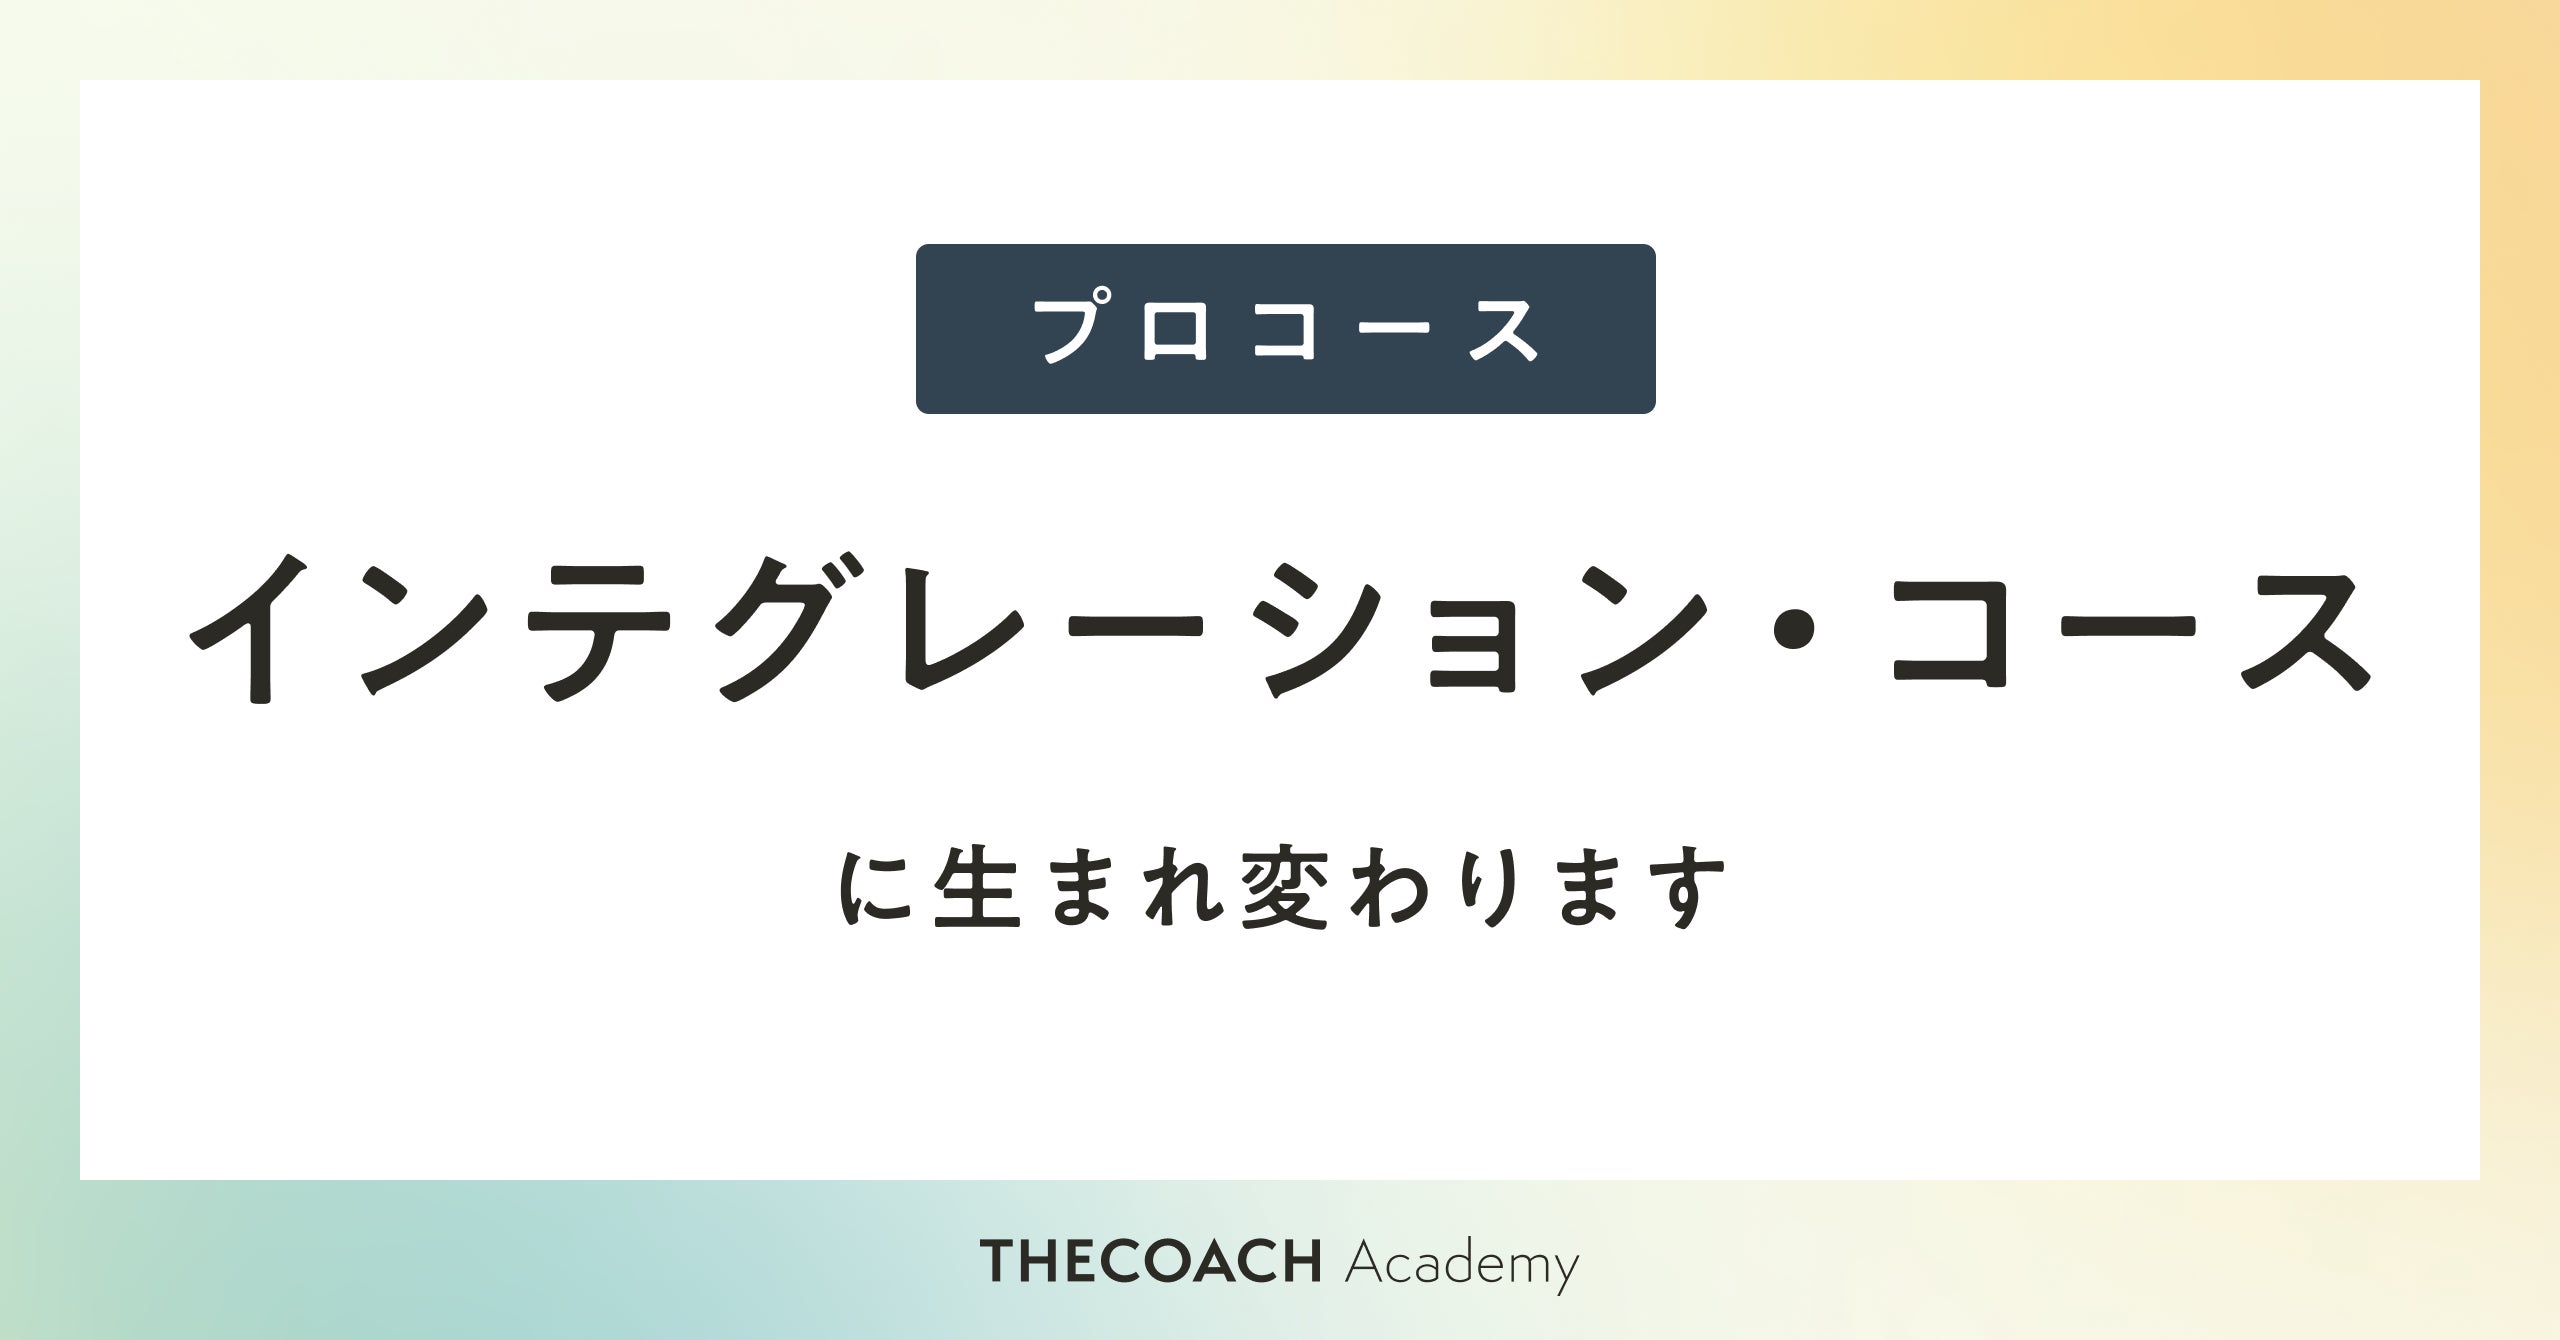 THE COACH Academy が「インテグレーション・コース」をリリースしました。